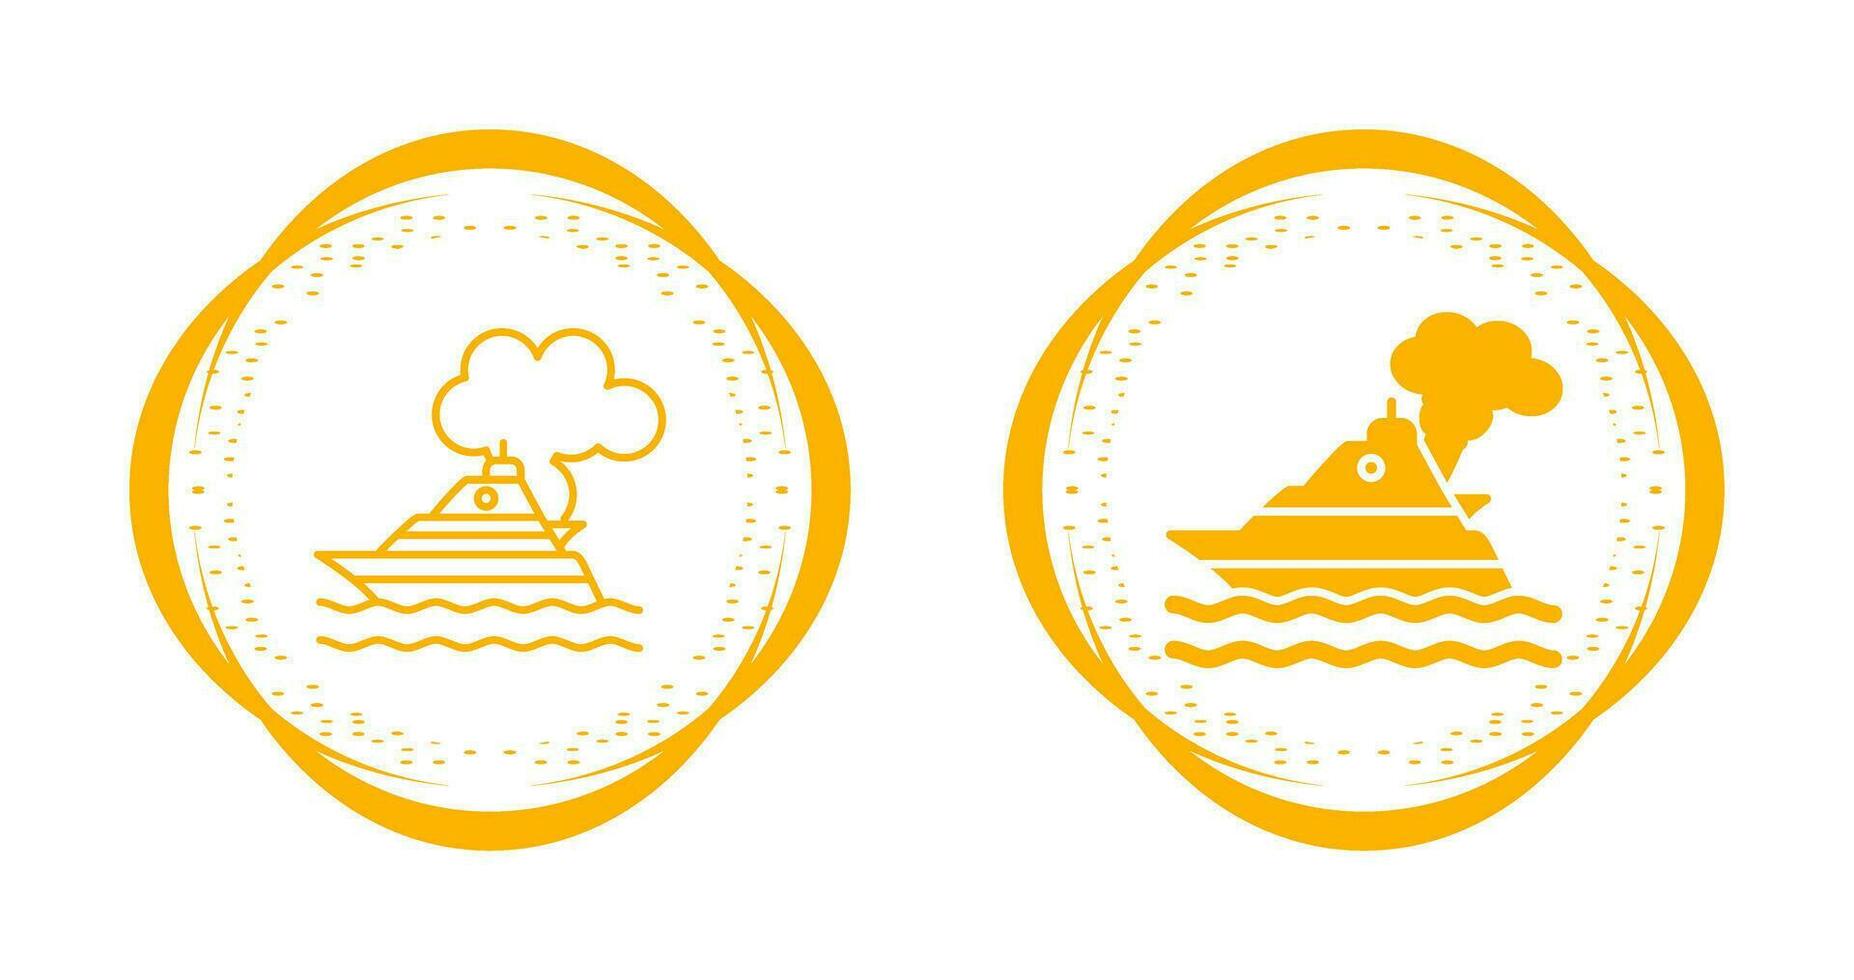 Ship Pollution Vector Icon